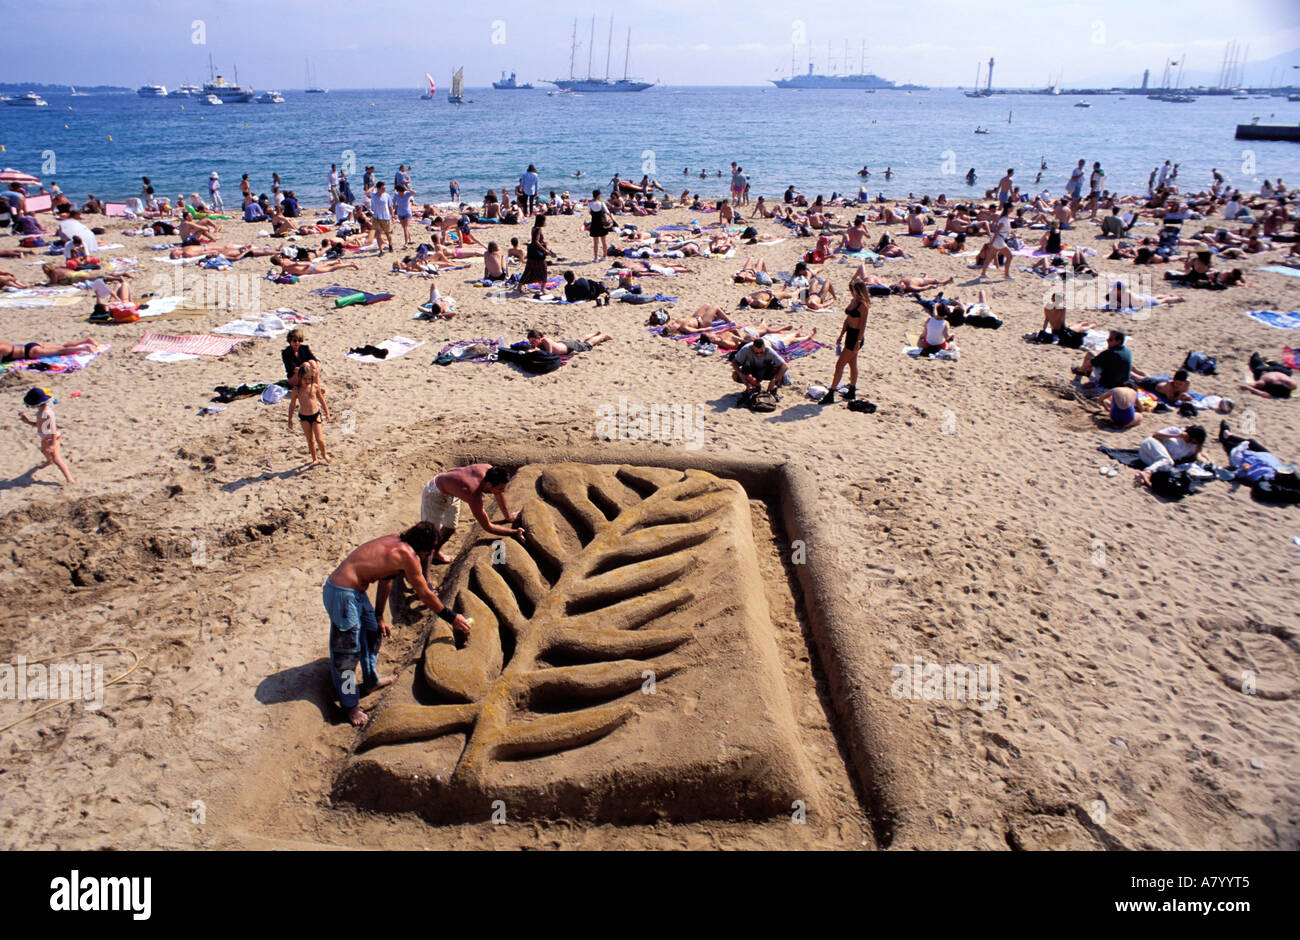 France, Alpes Maritimes, Cannes, plage, pendant le festival du film (symbole de la palme d'or) Banque D'Images